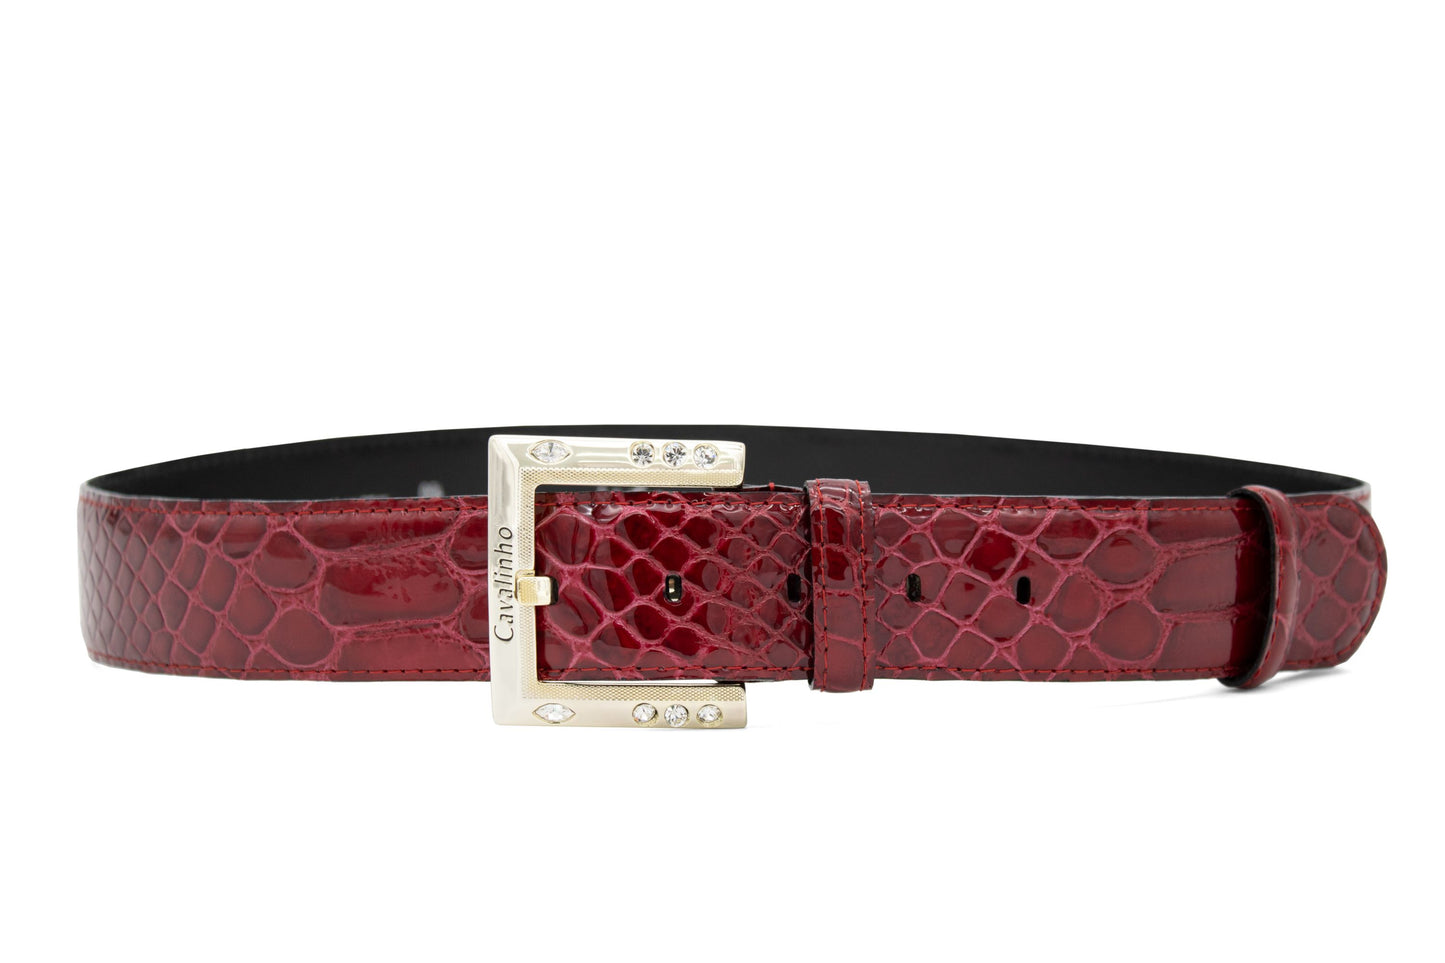 Cavalinho Gallop Patent Leather Belt - DarkRed Gold - 58010810.04_1